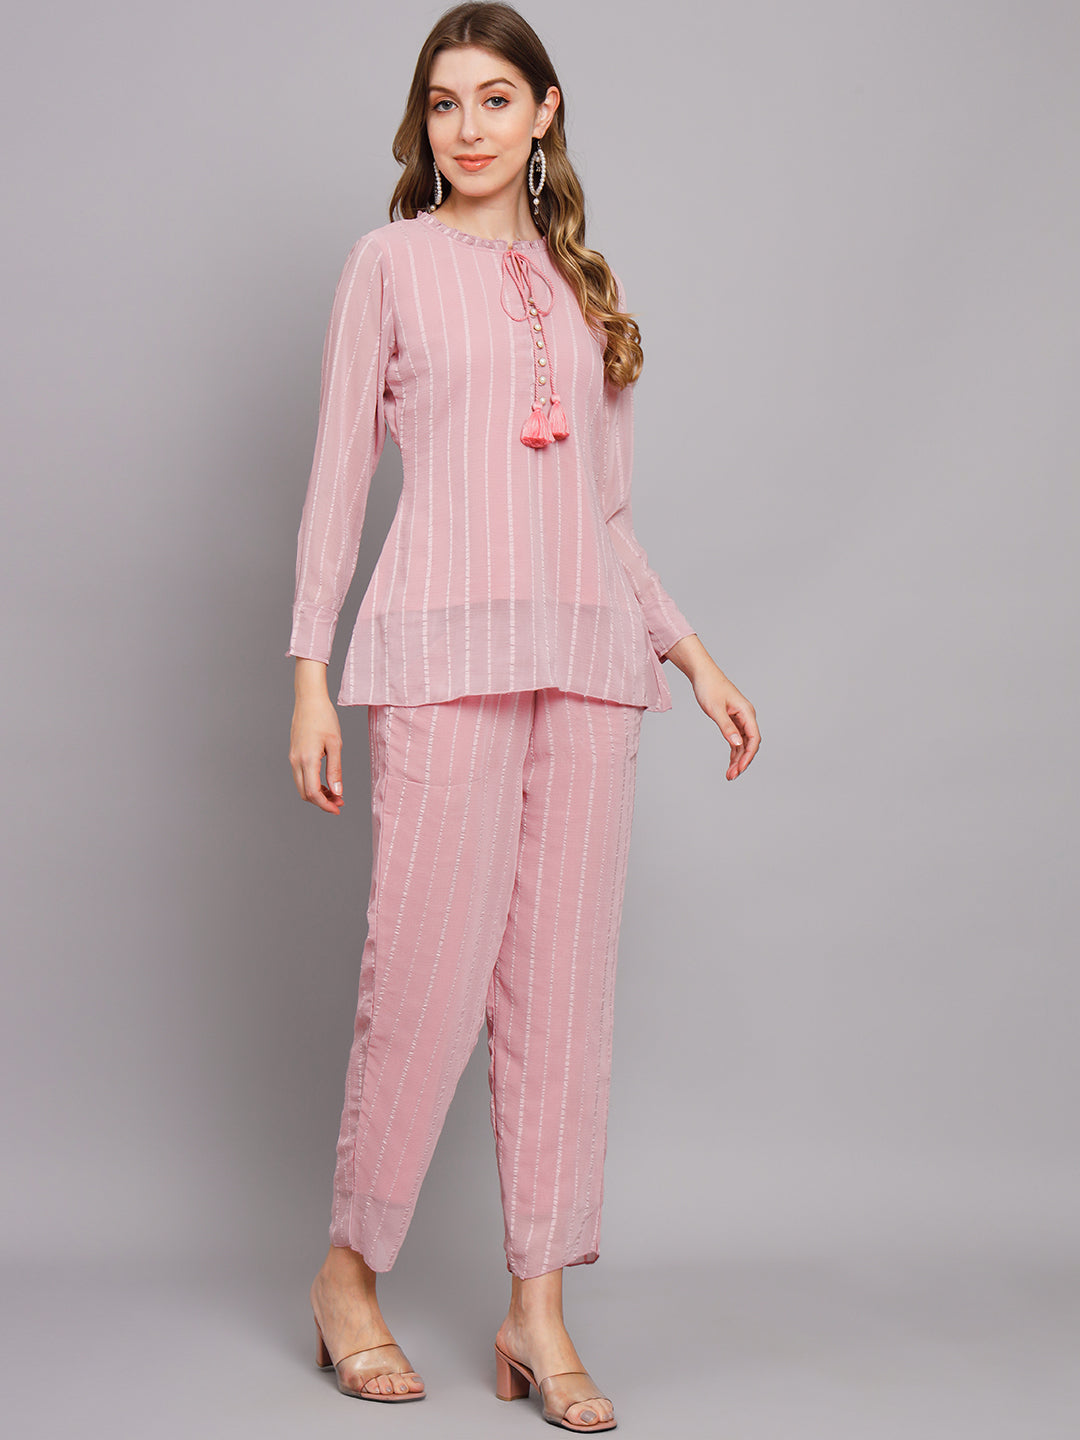 Women's Pink Chiffon Straight Night Suit